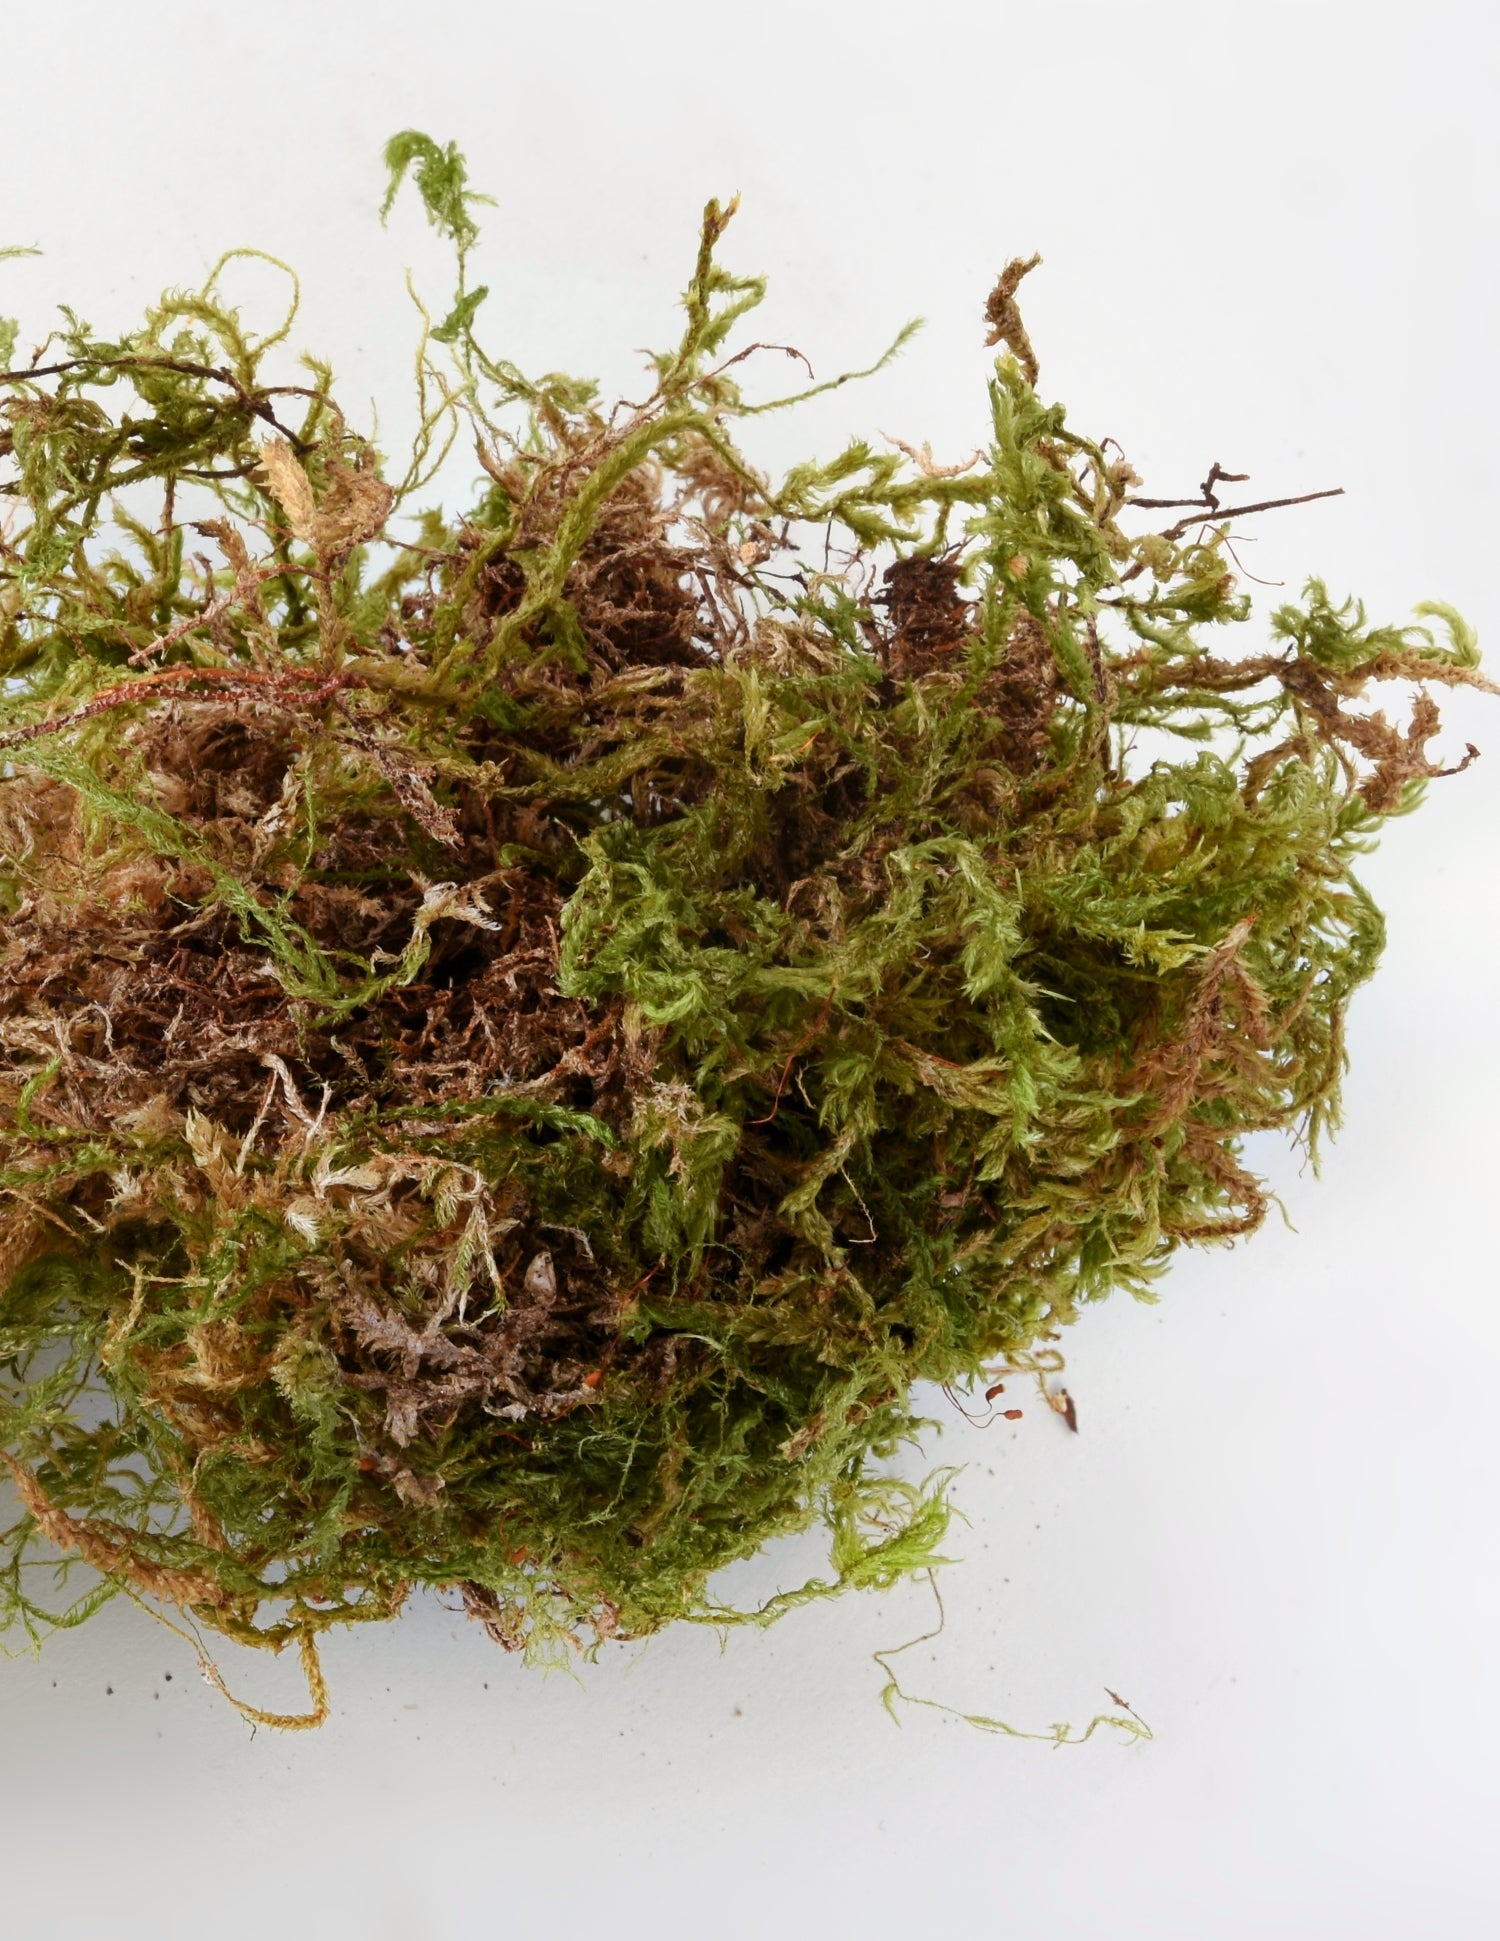 4 Quart Green Sphagnum Moss